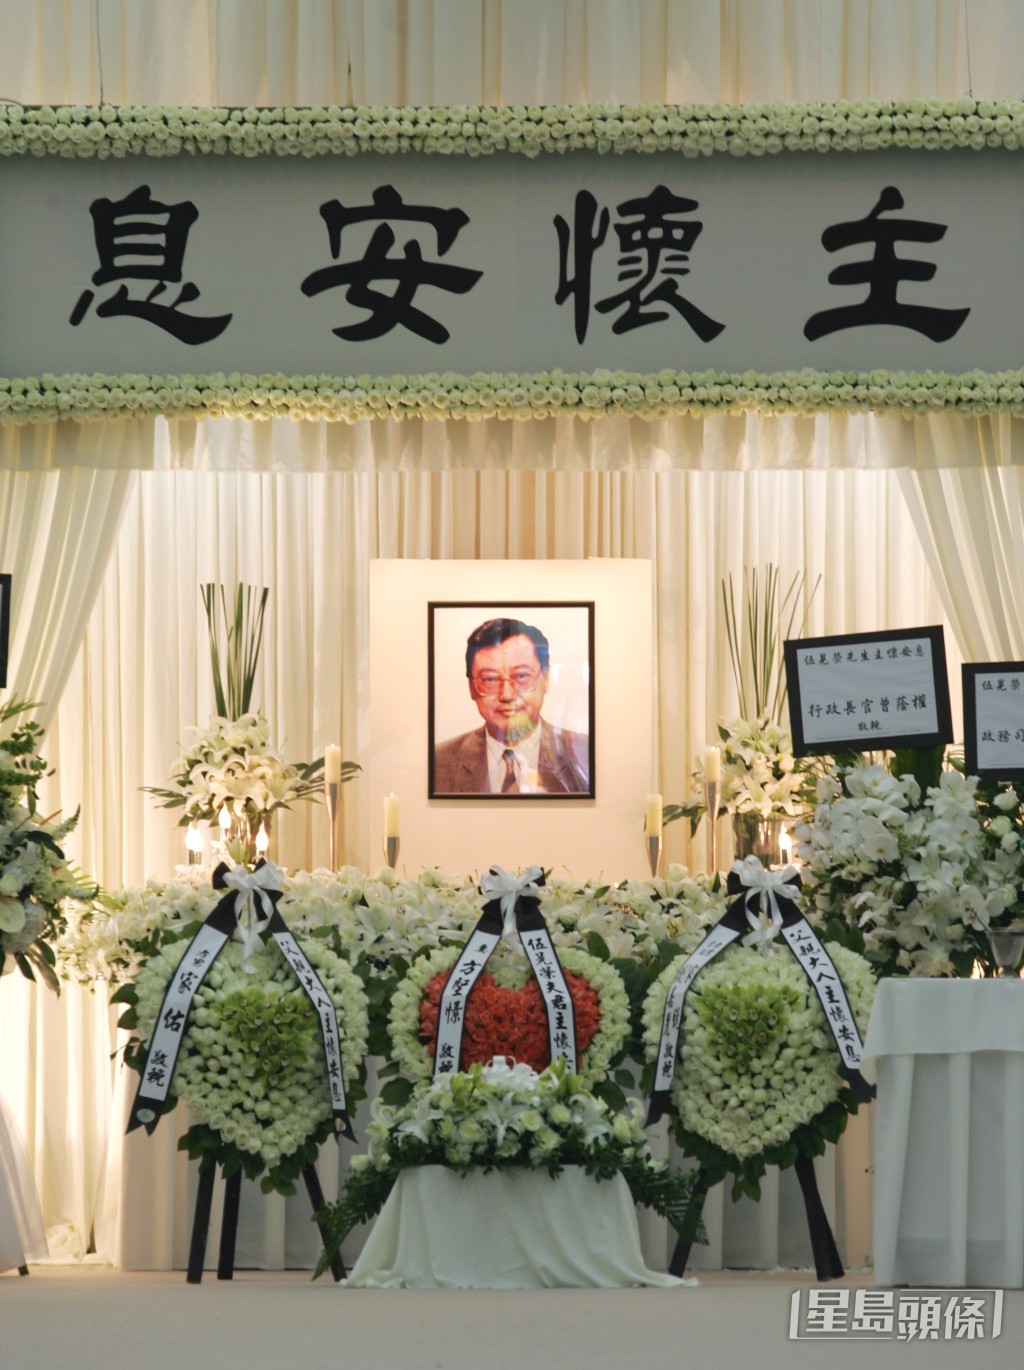 伍晃荣于2008年7月14日因白血病导致器官衰竭逝世，终年67岁。